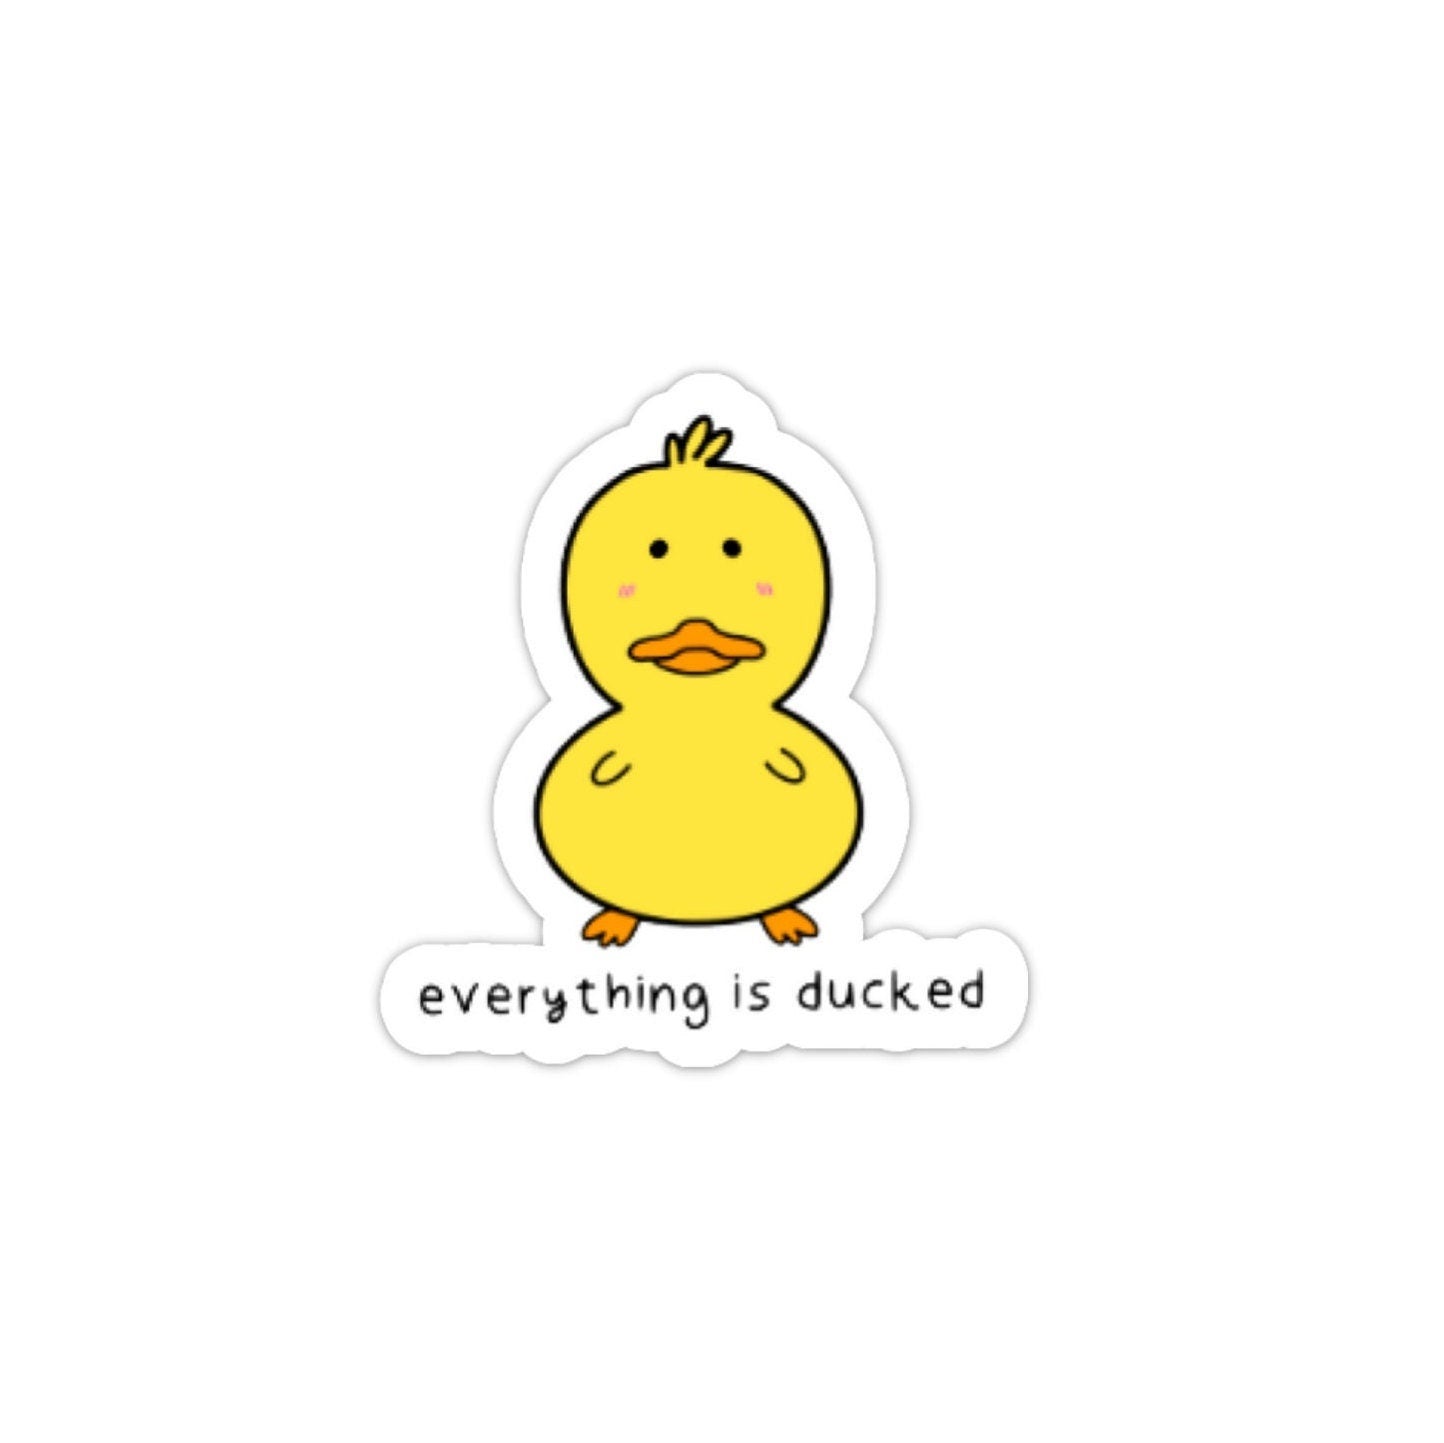 Everything is ducked vinyl sticker